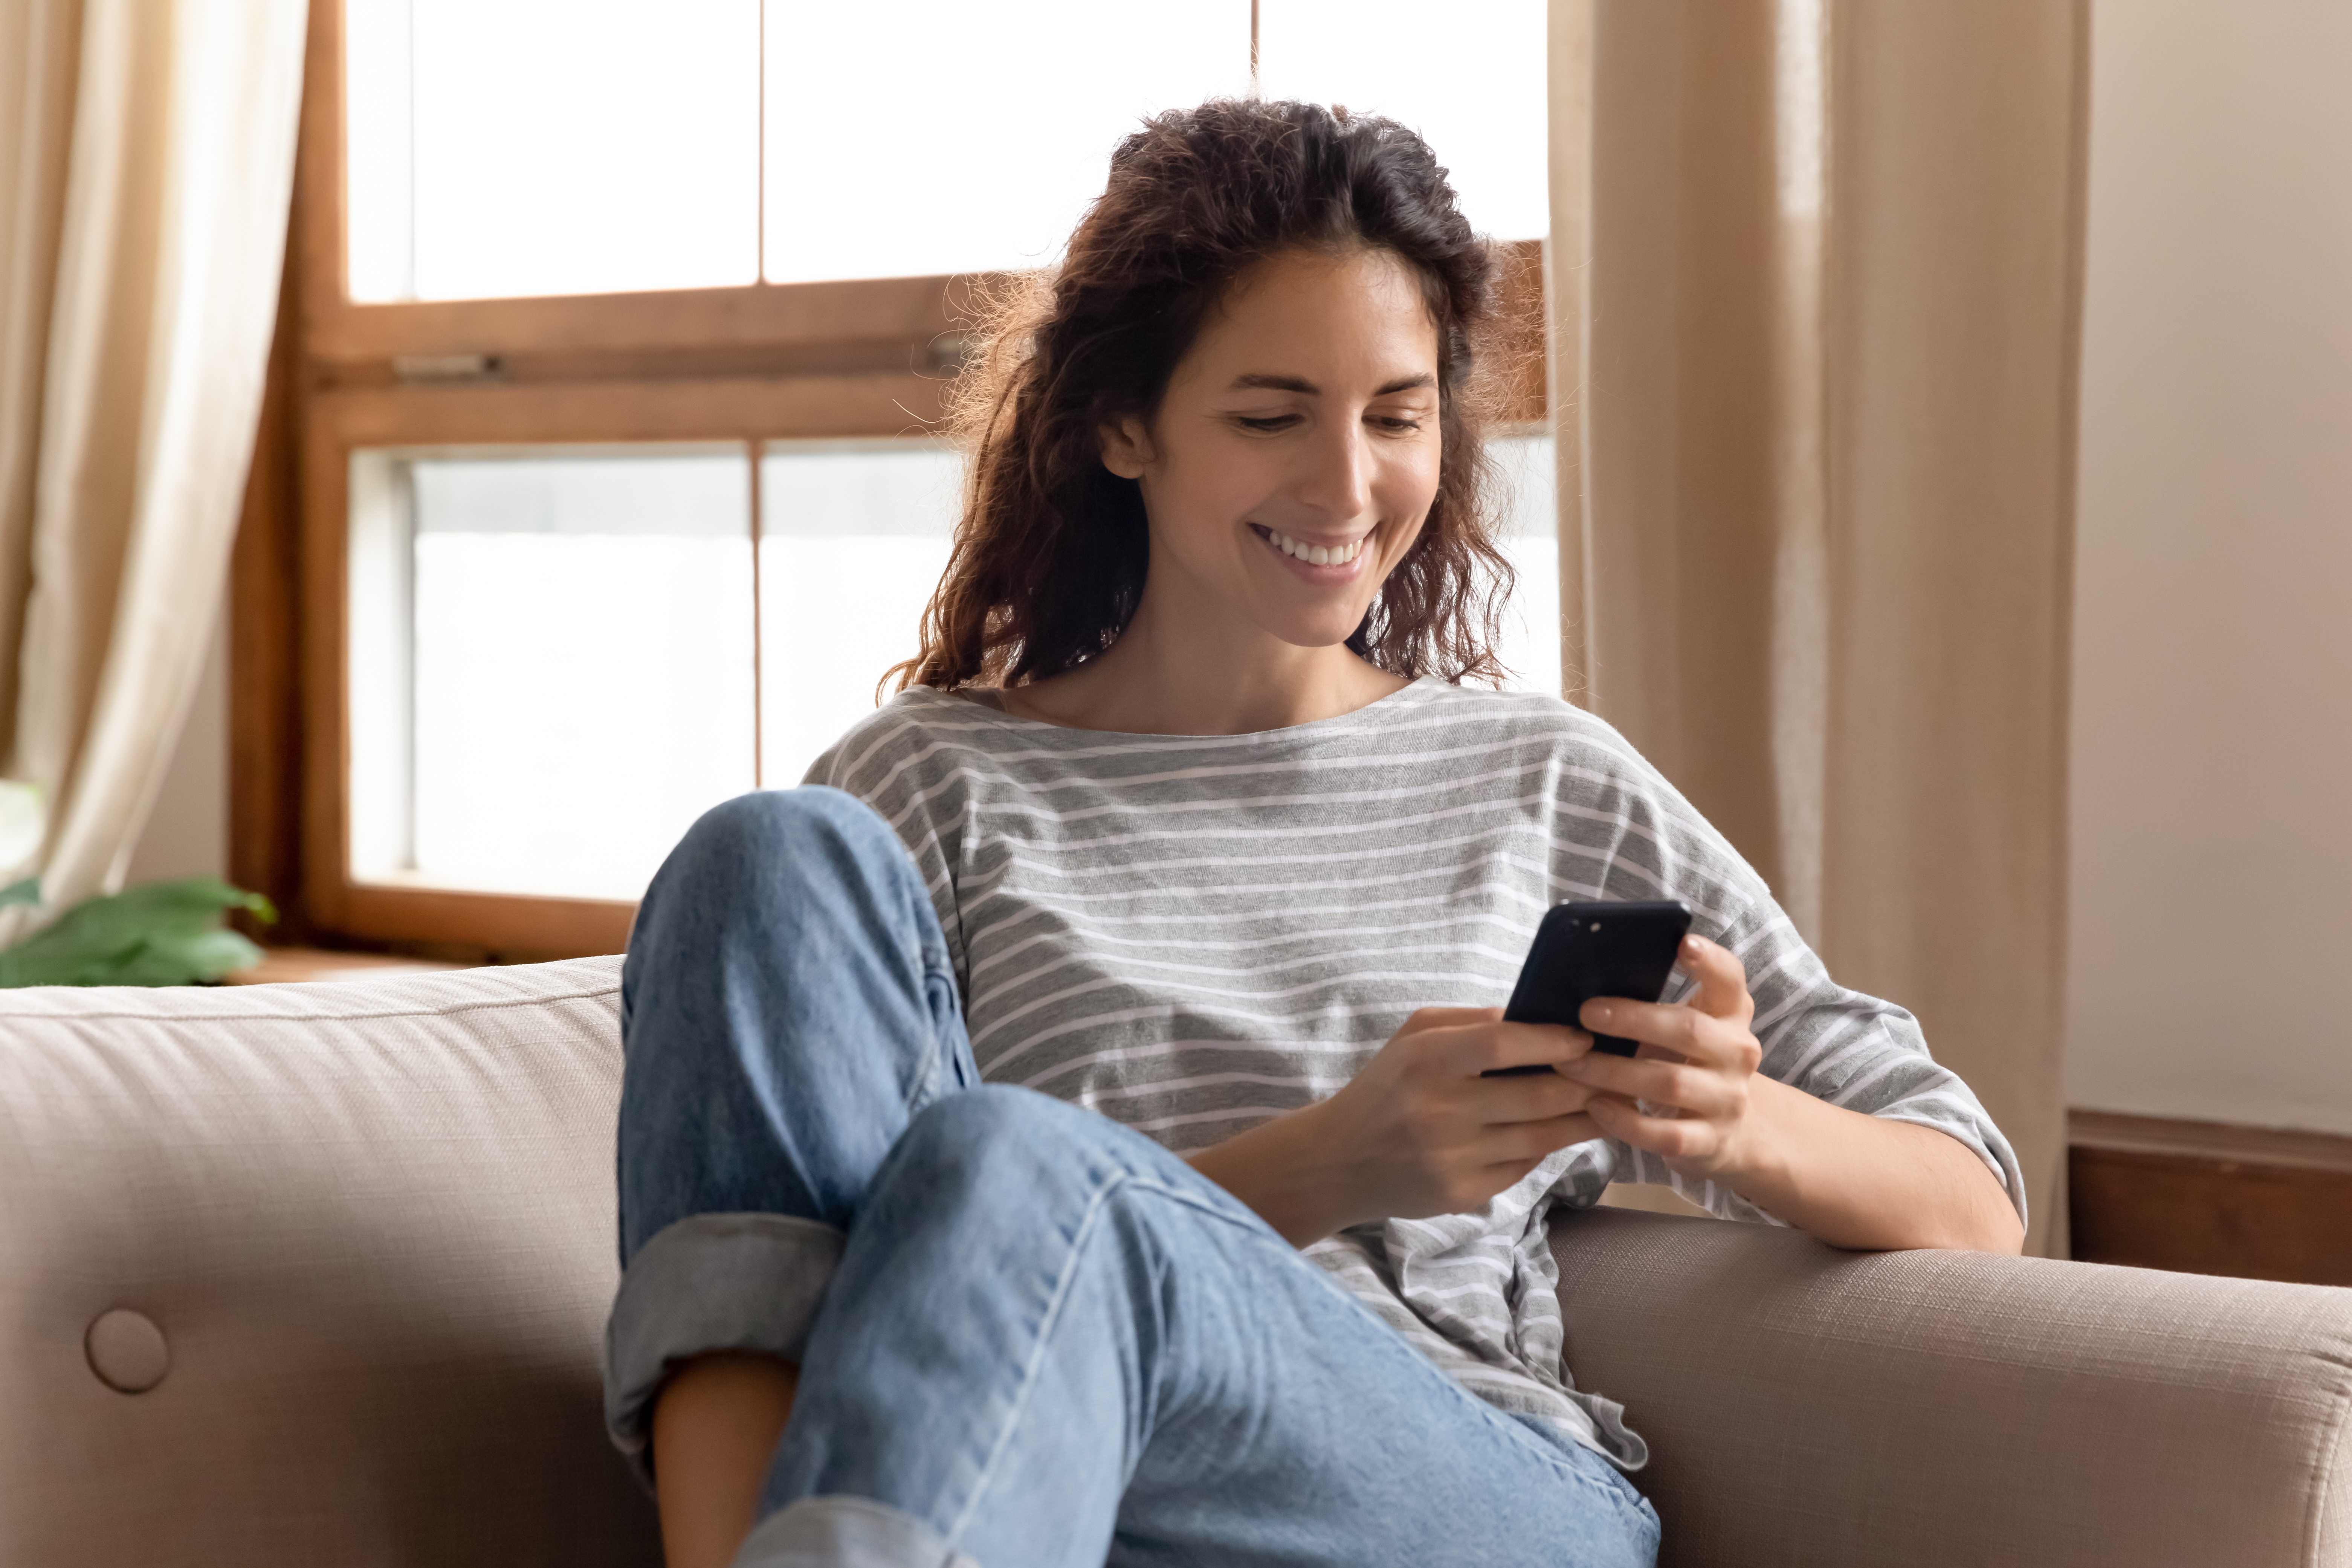 Une femme souriant en regardant son téléphone portable | Source : Shutterstock